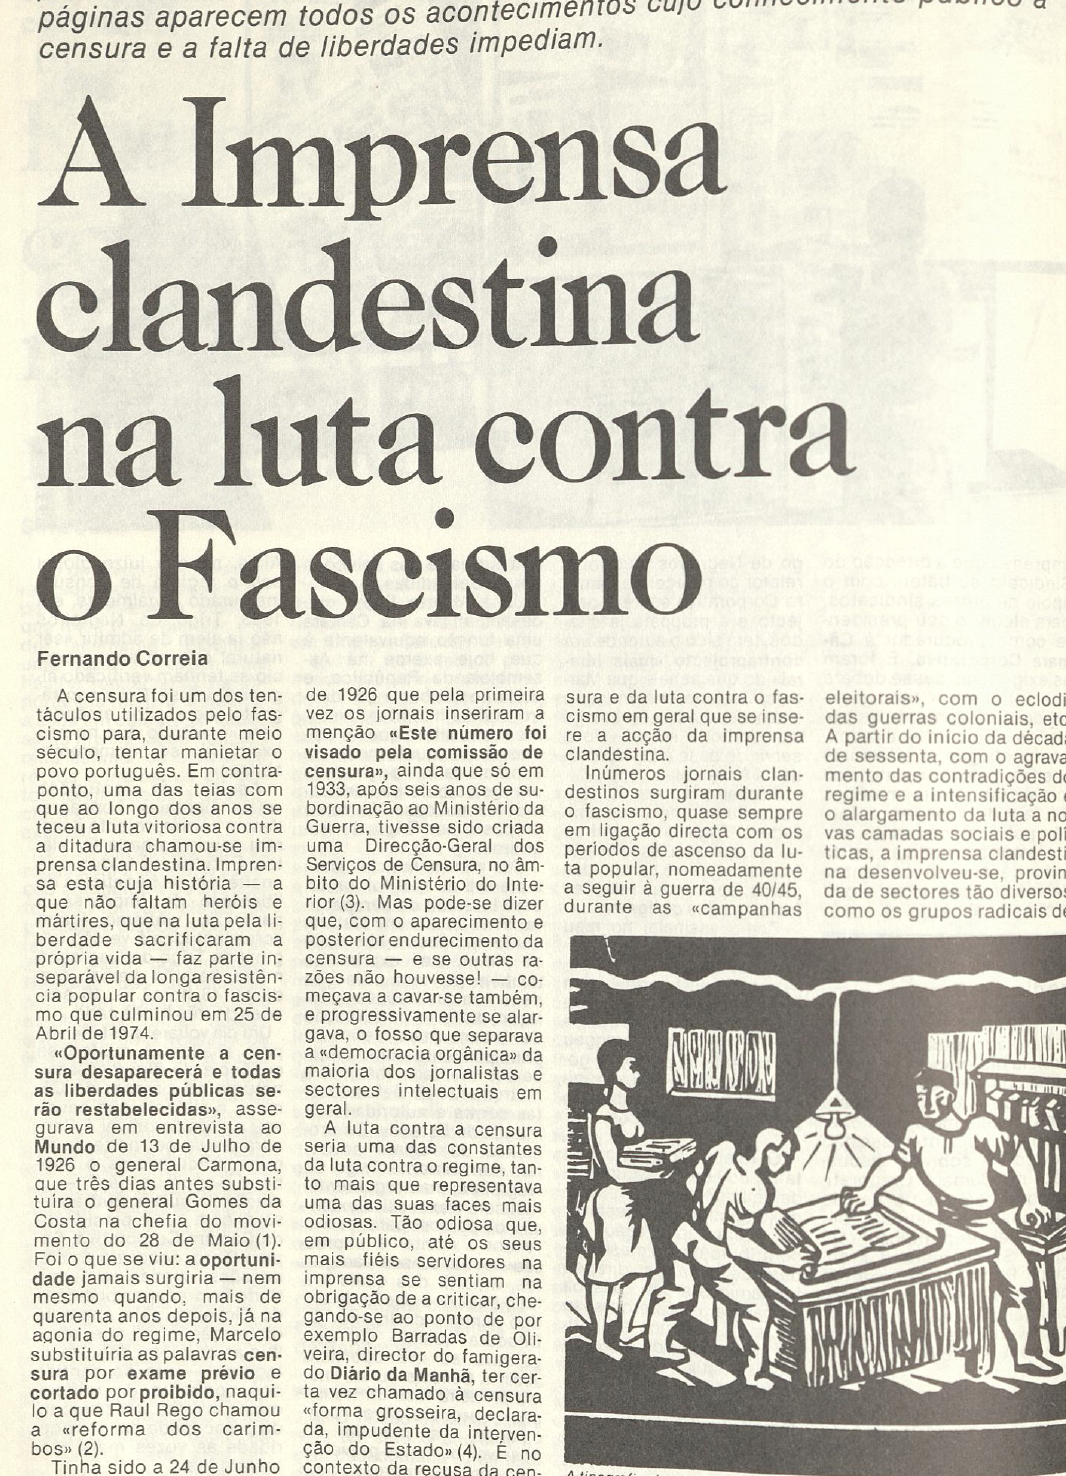 "A imprensa clandestina e a luta contra o Fascismo"